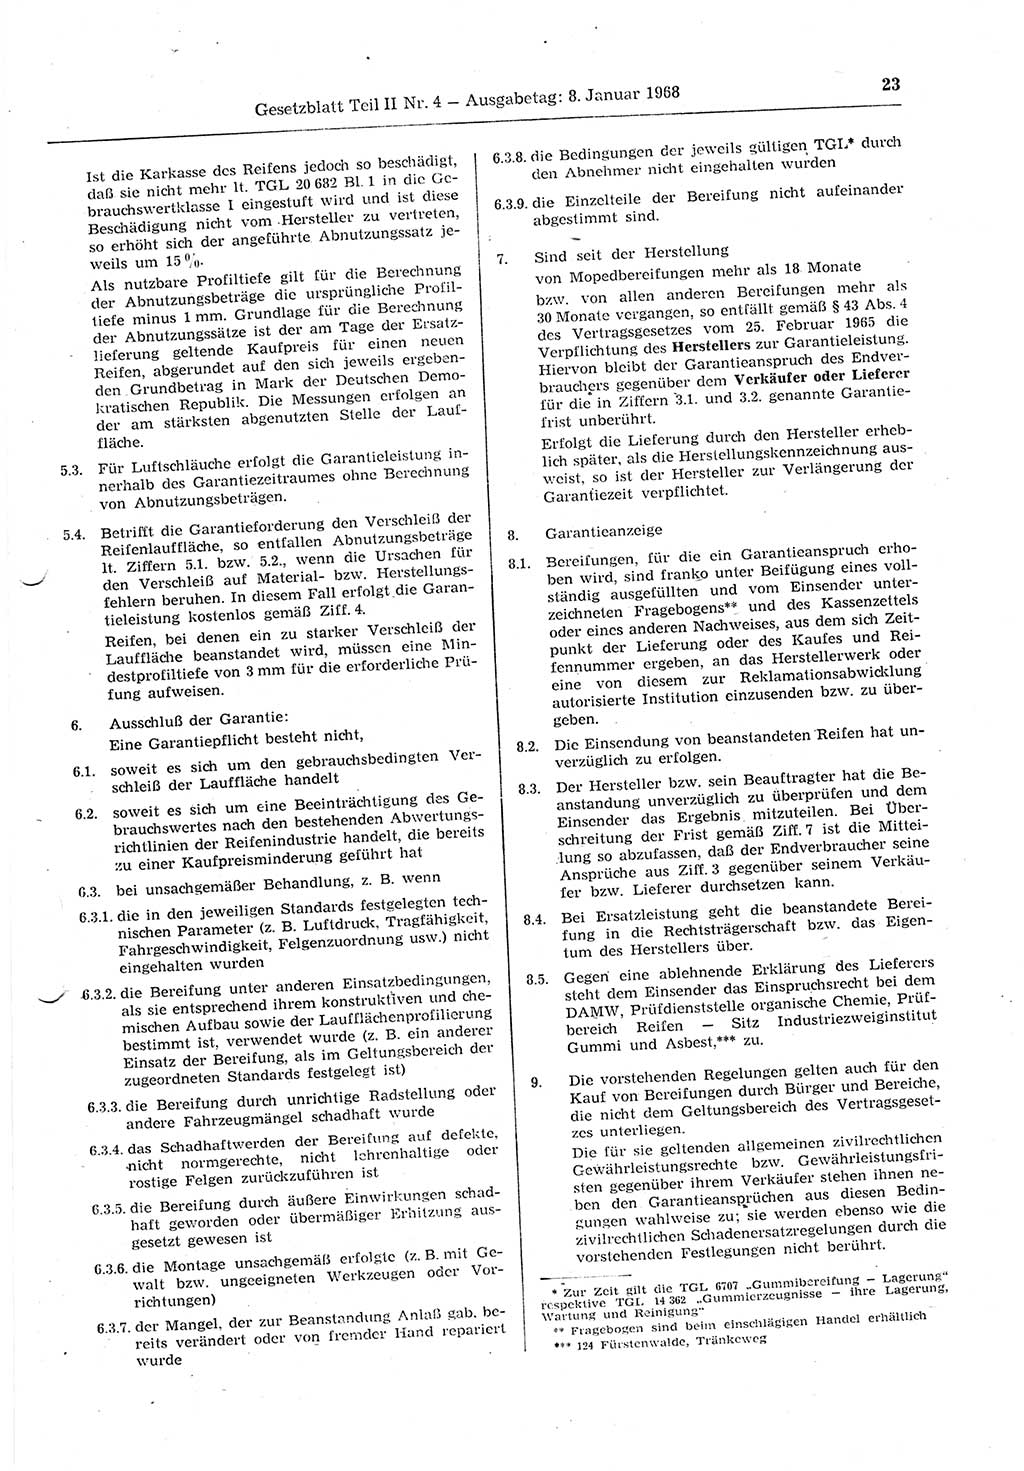 Gesetzblatt (GBl.) der Deutschen Demokratischen Republik (DDR) Teil ⅠⅠ 1968, Seite 23 (GBl. DDR ⅠⅠ 1968, S. 23)